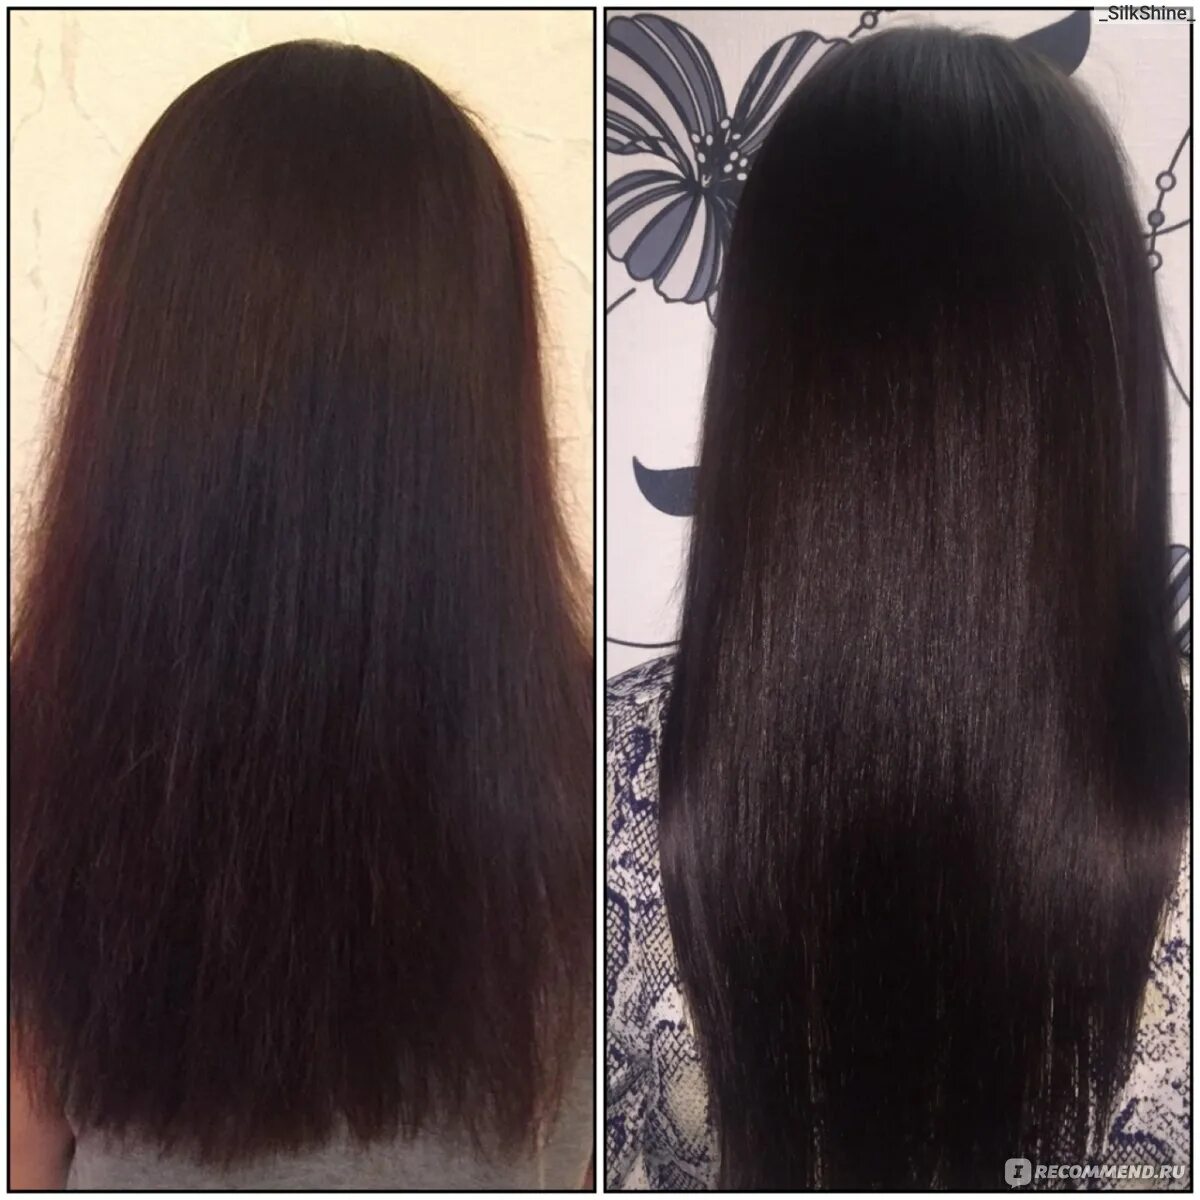 Волосы до и после дарсонваля. Дарсонвализация волос до и после. Дарсонваль для волос эффект до и после. Дарсонваль для волос до и после. Irecommend волосы